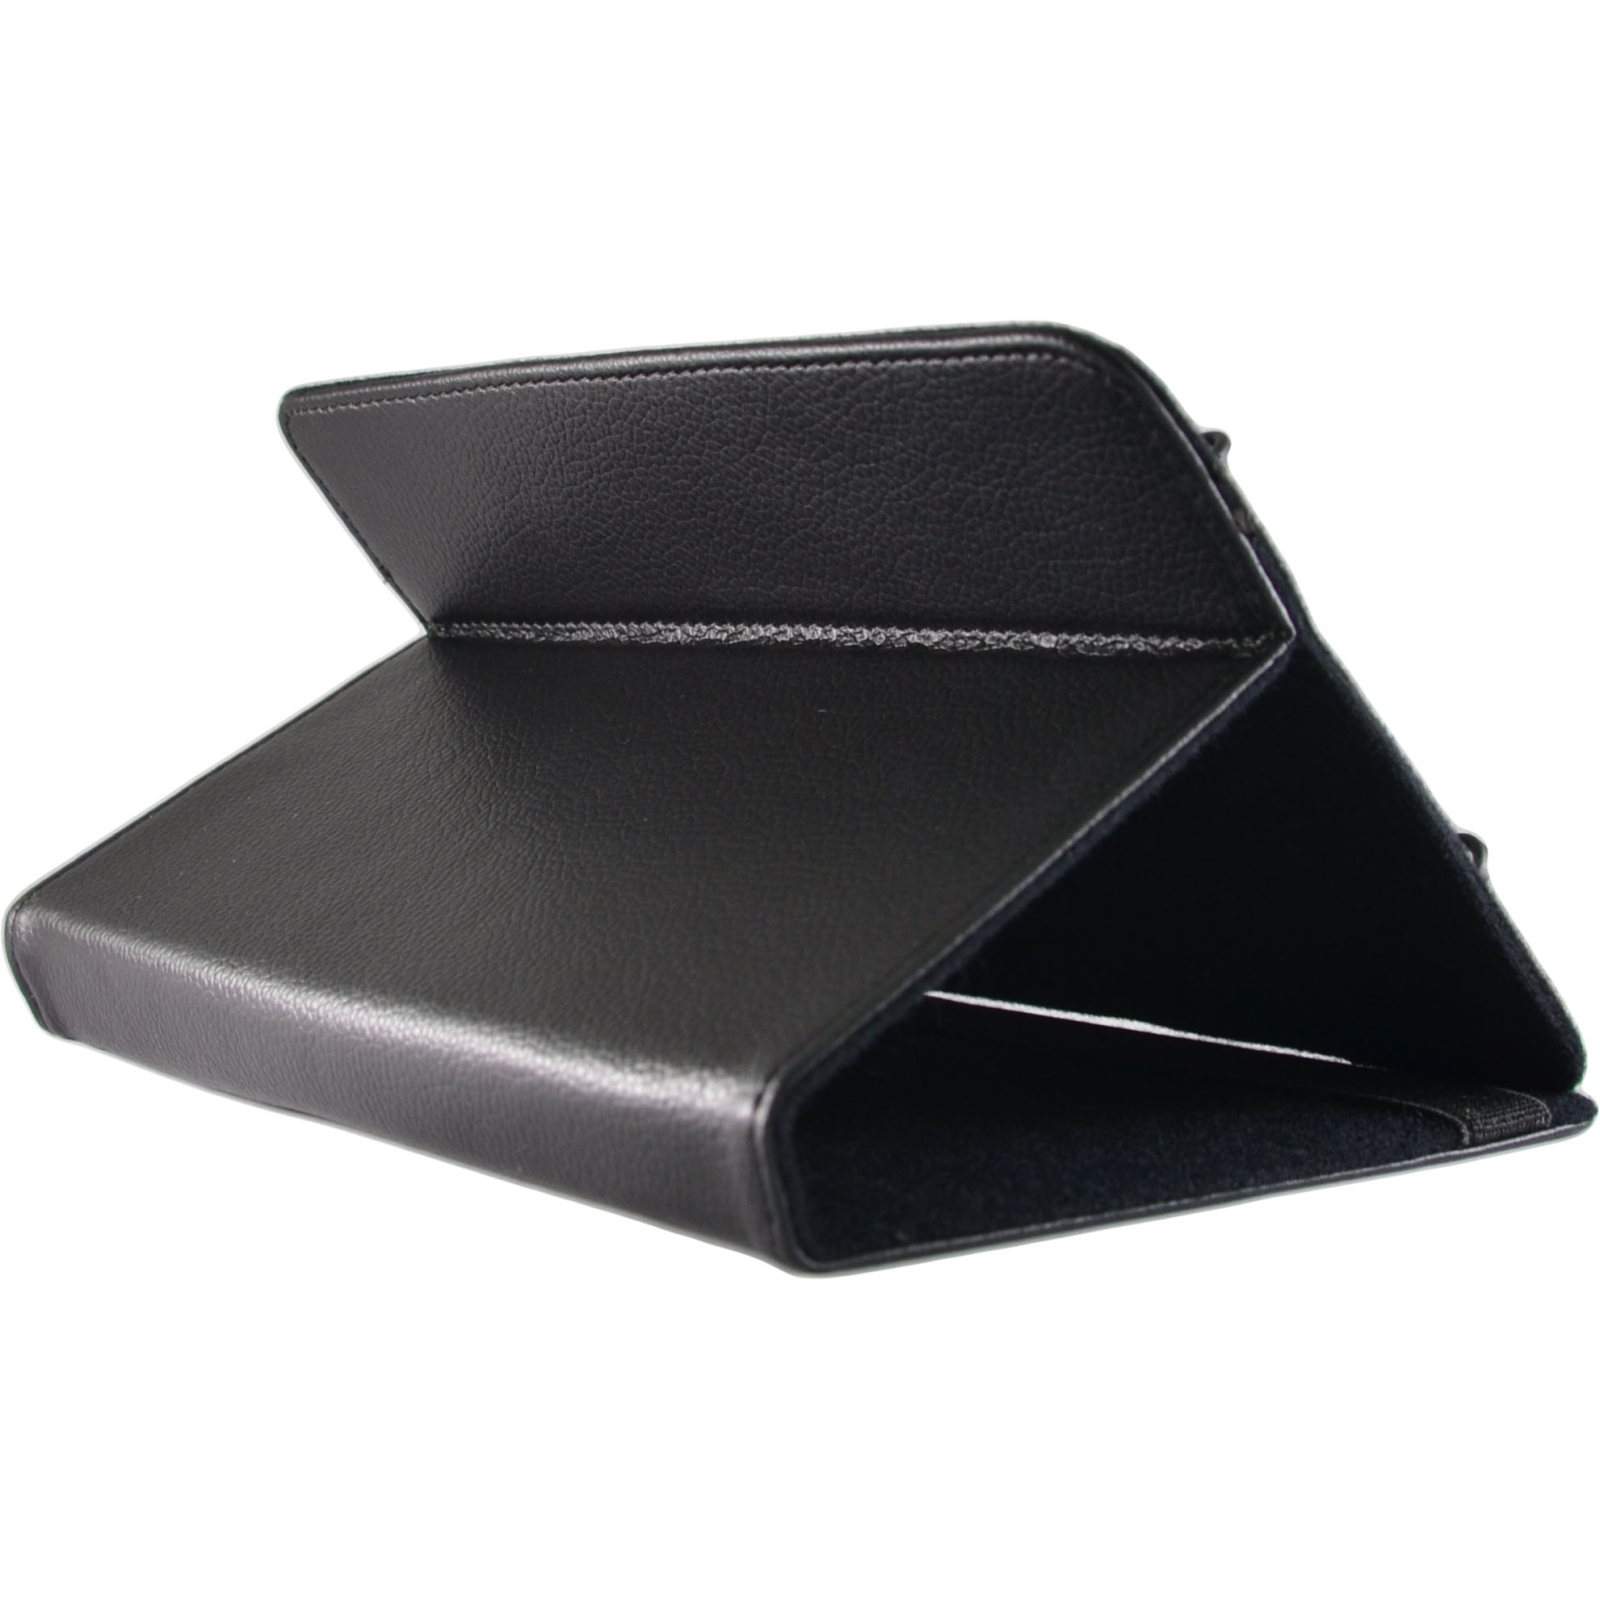 Чехол для планшета Pro-case Чохол планшету універсальний Pro-case case fits up 10" black (UNS-022) изображение 5